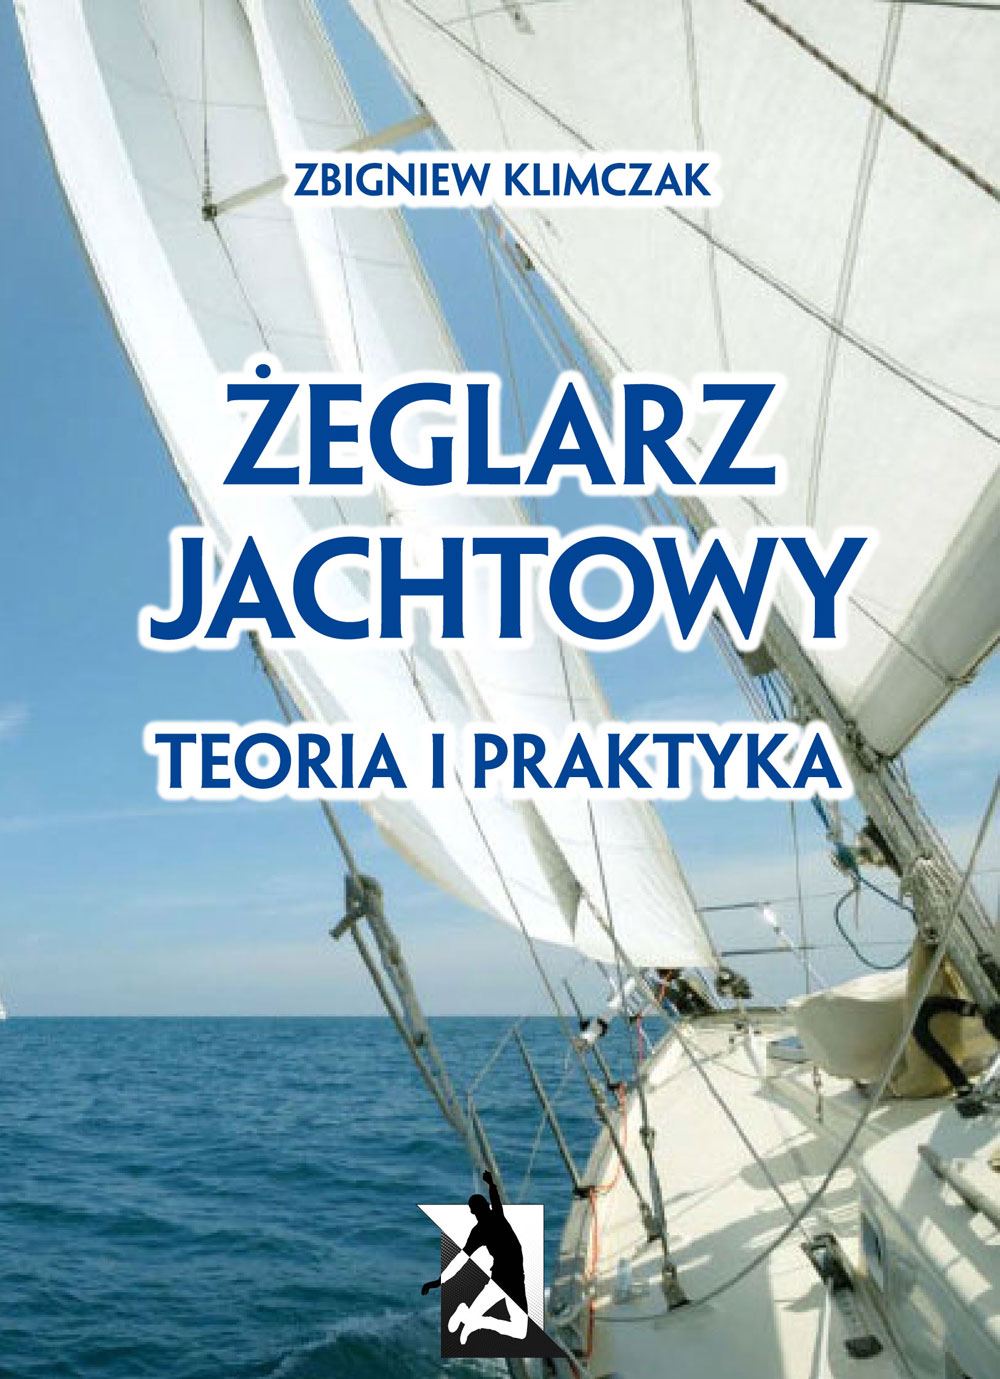 Żeglarz jachtowy - teoria i praktyka - Ebook (Książka PDF) do pobrania w formacie PDF